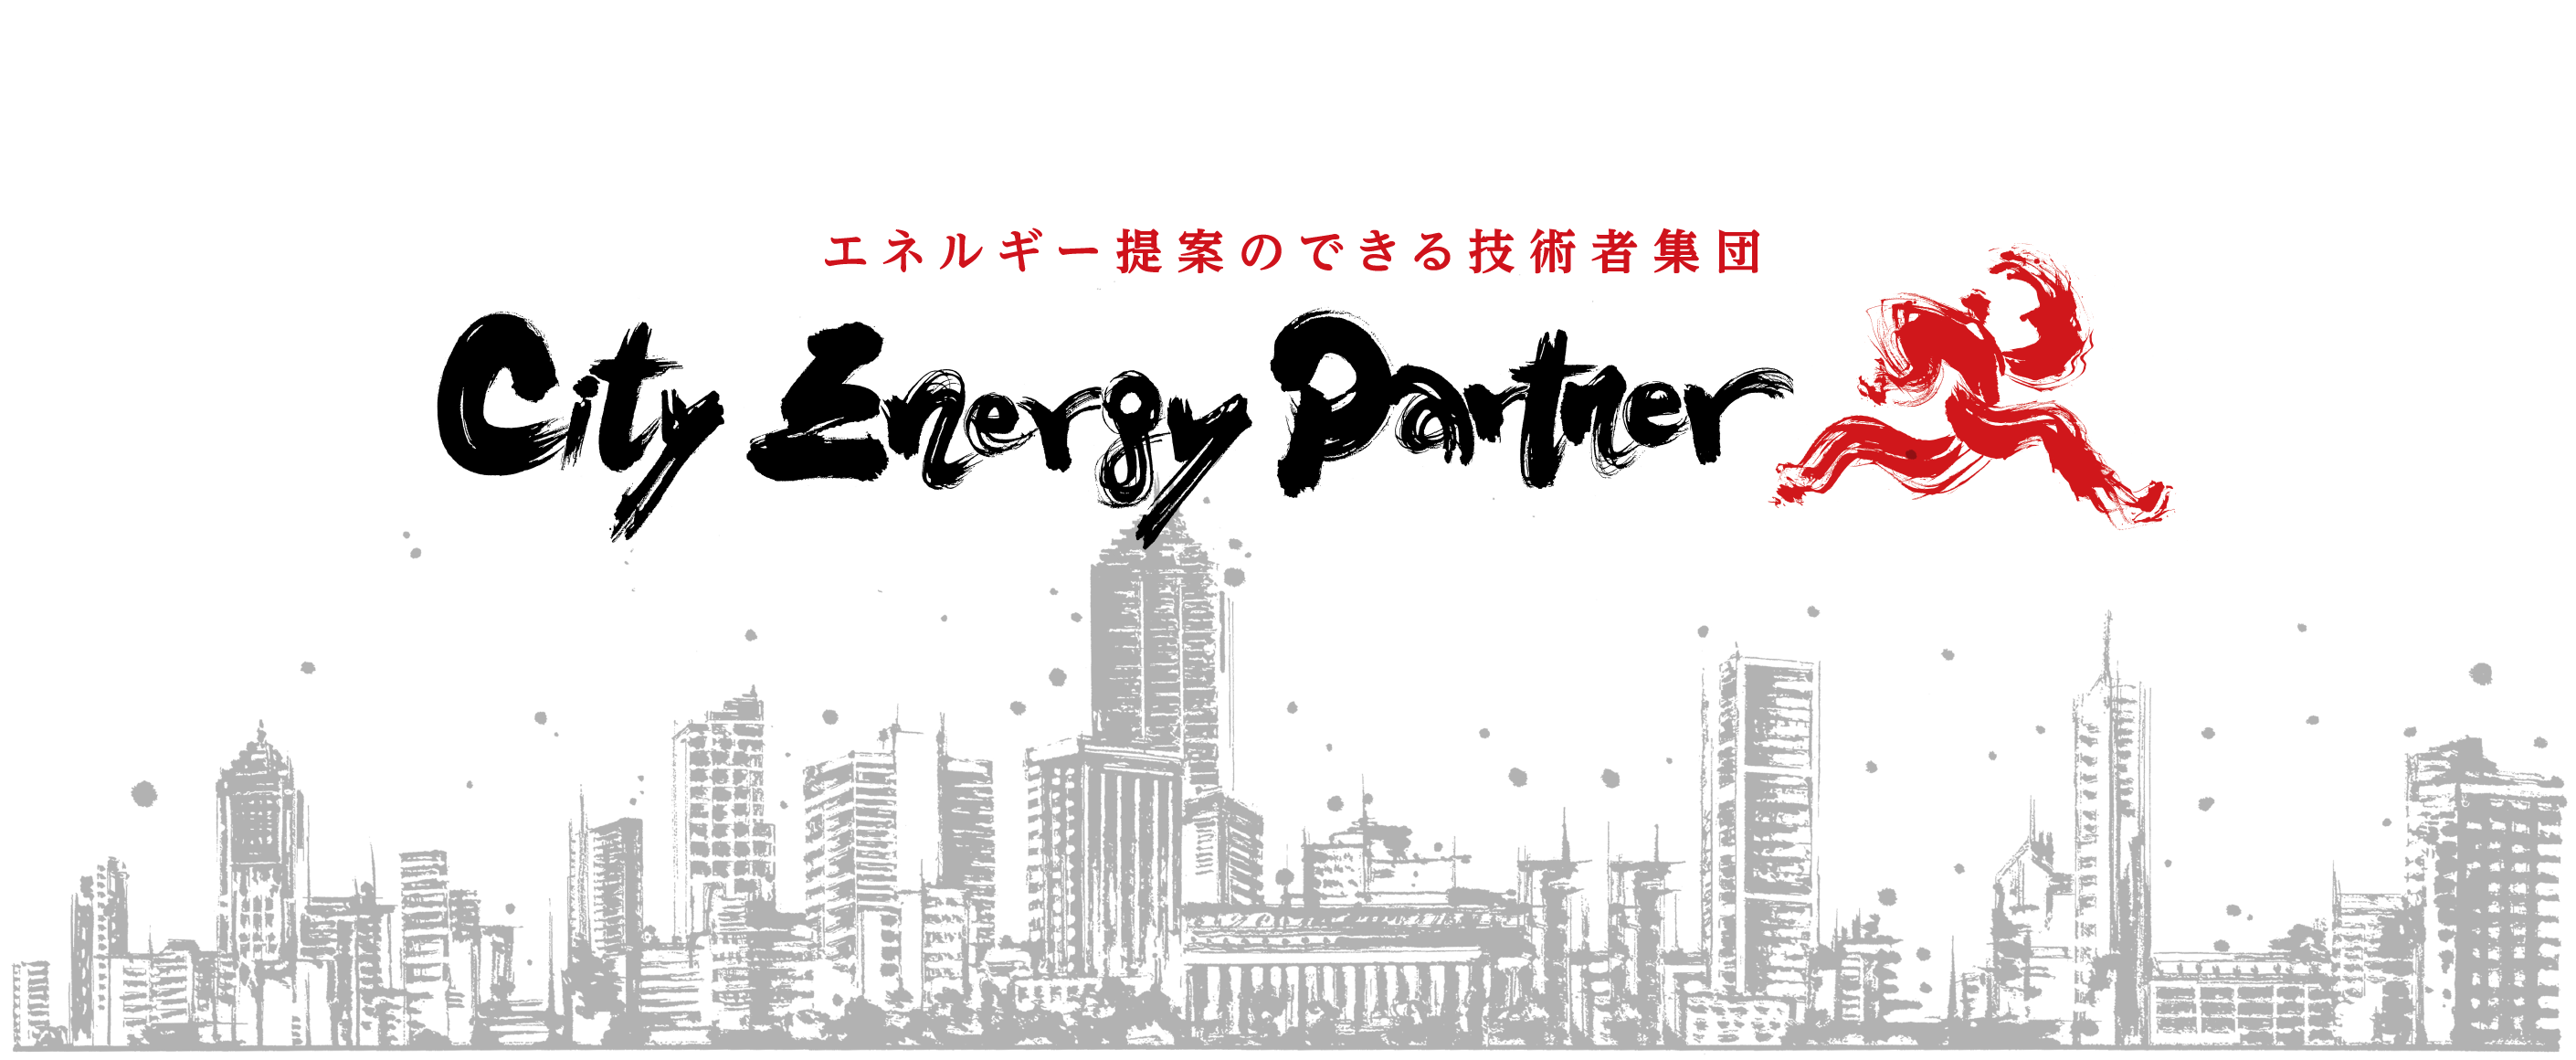 エネルギー提案のできる技術者集団 City Energy Partner